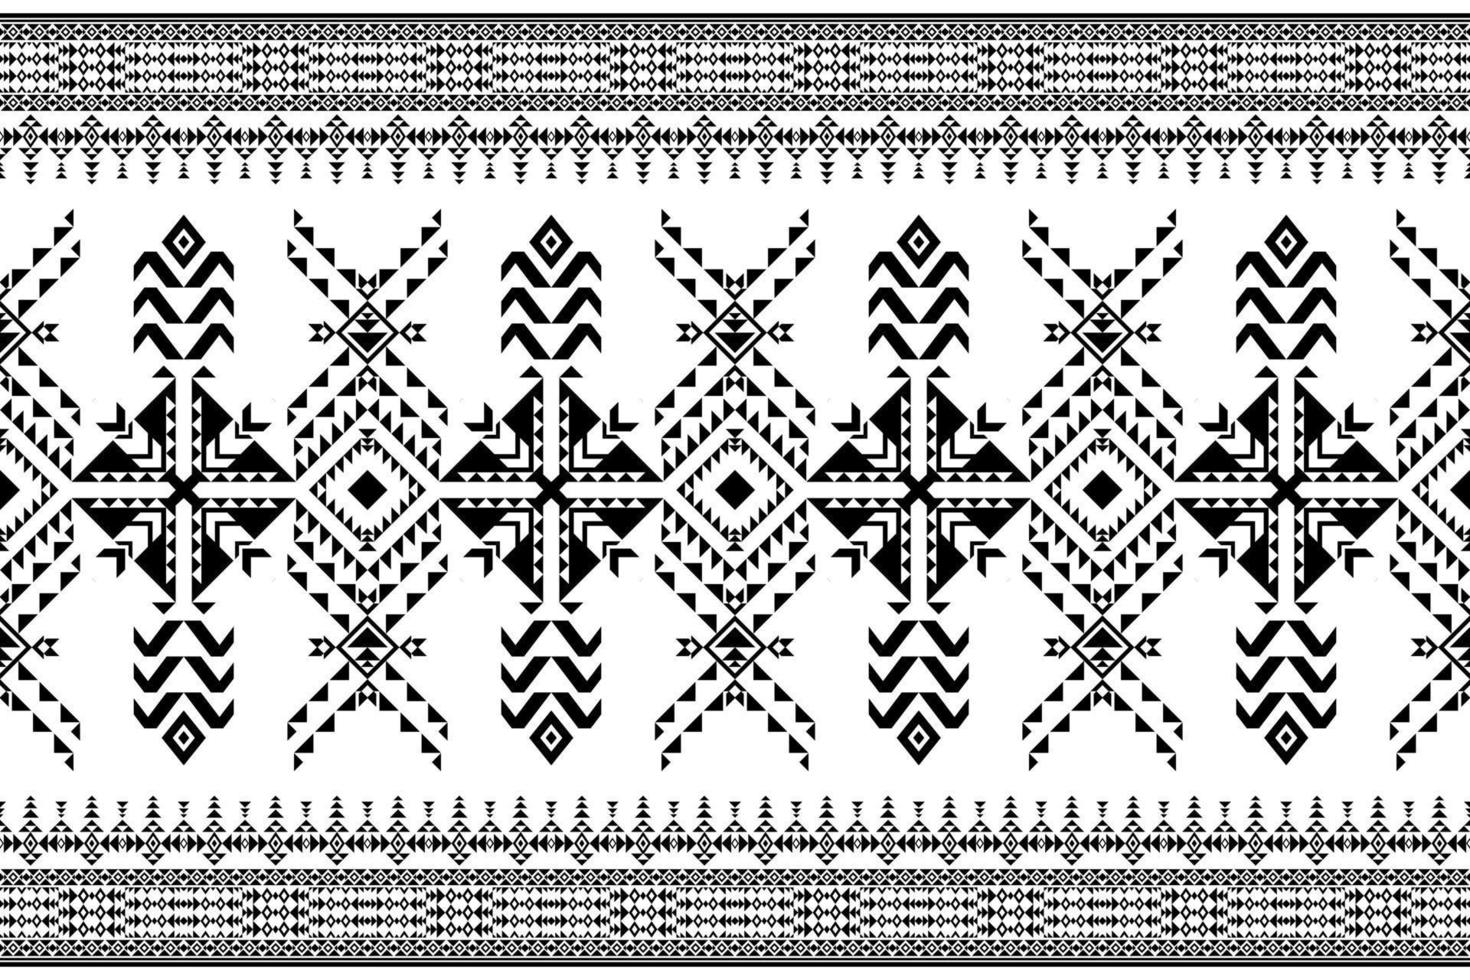 padrão sem emenda de estilo étnico geométrico. design para tecido, papel de parede, fundo, tapete, roupas. textura de vetor étnico tribal. ilustração vetorial. cor preto e branco.